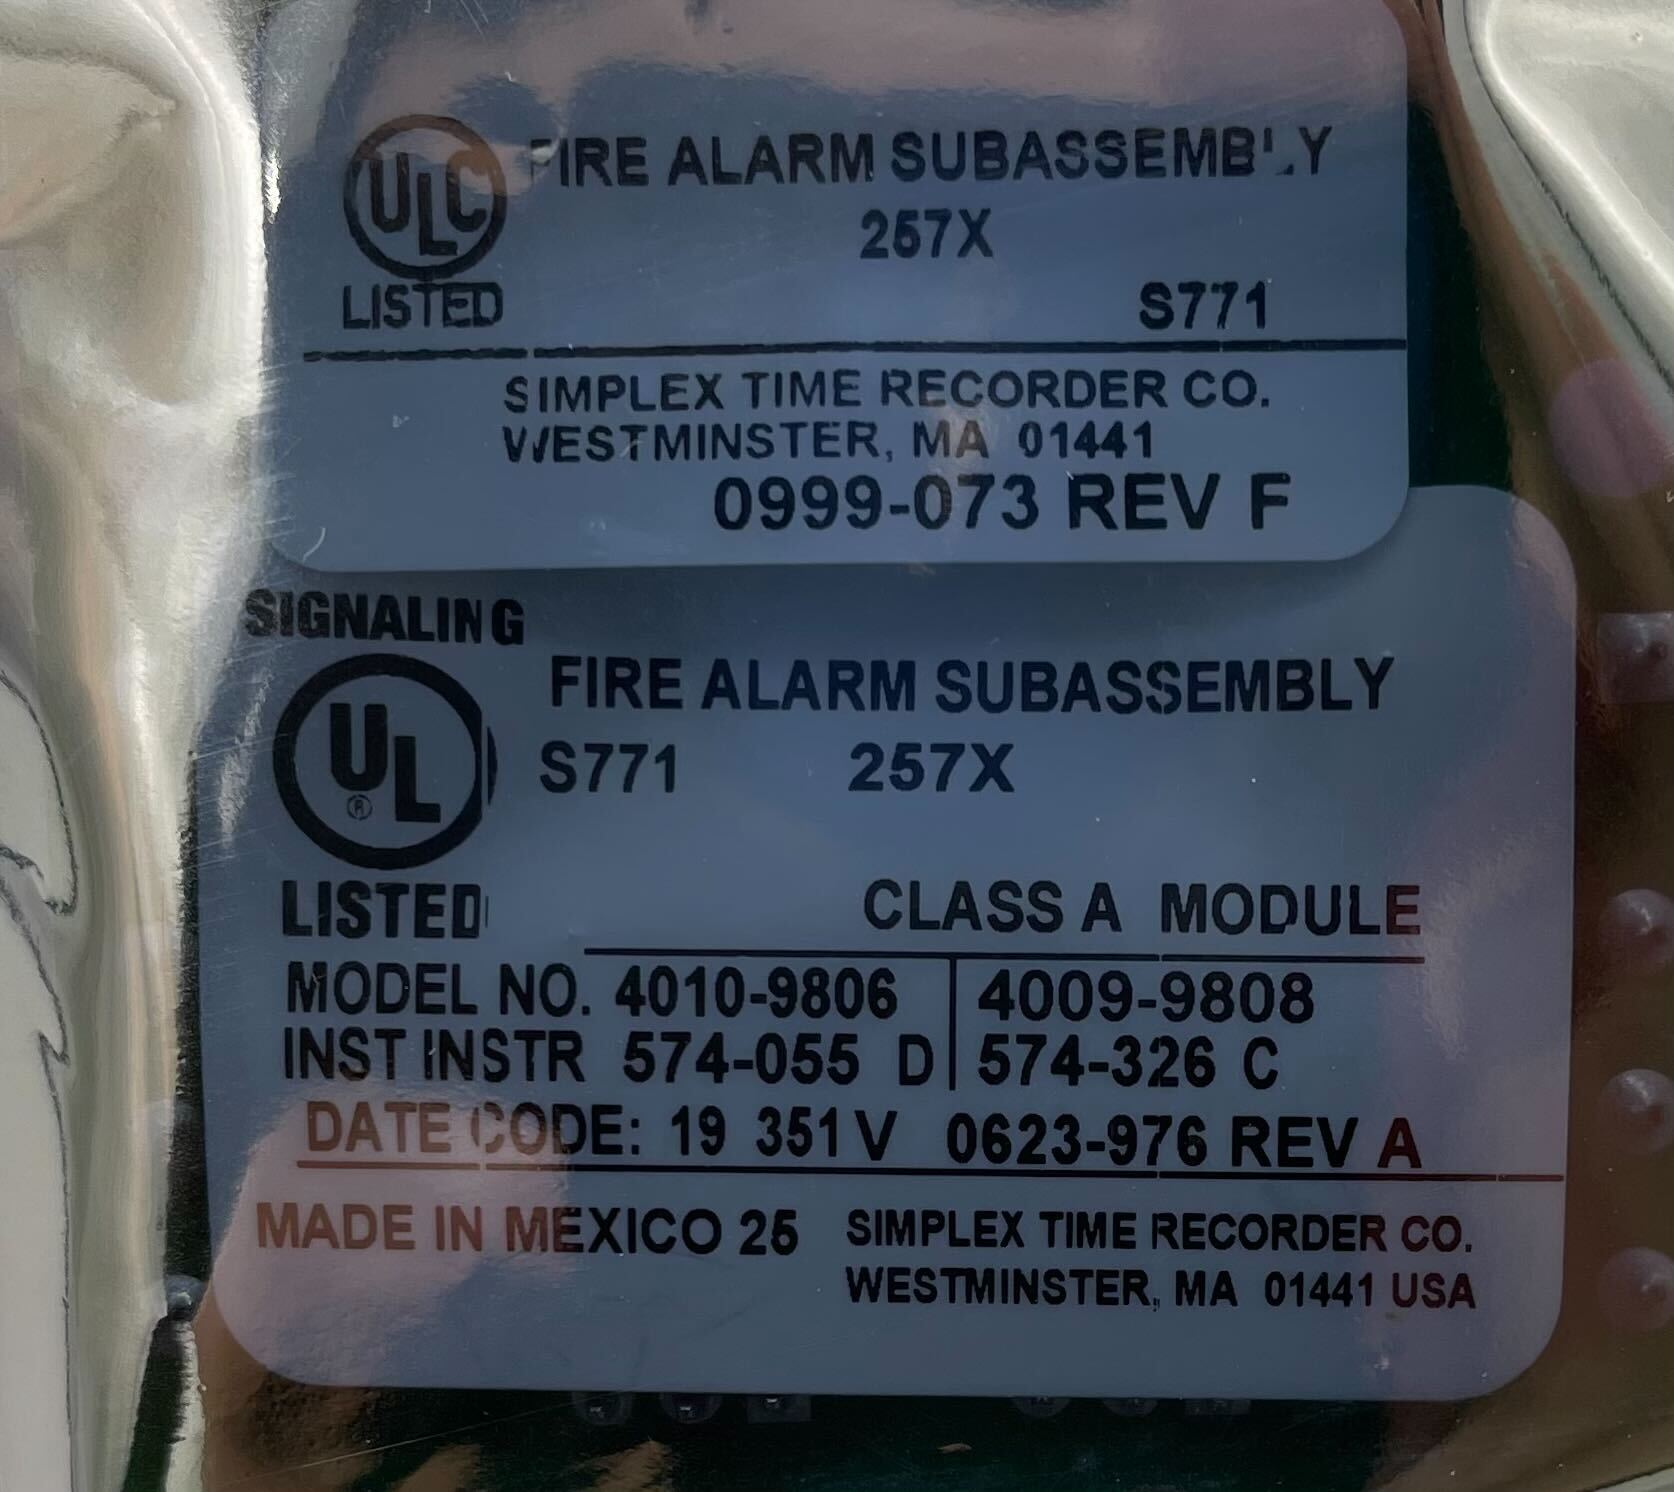 Simplex 4010-9806 Class A Nac Adapter - The Fire Alarm Supplier